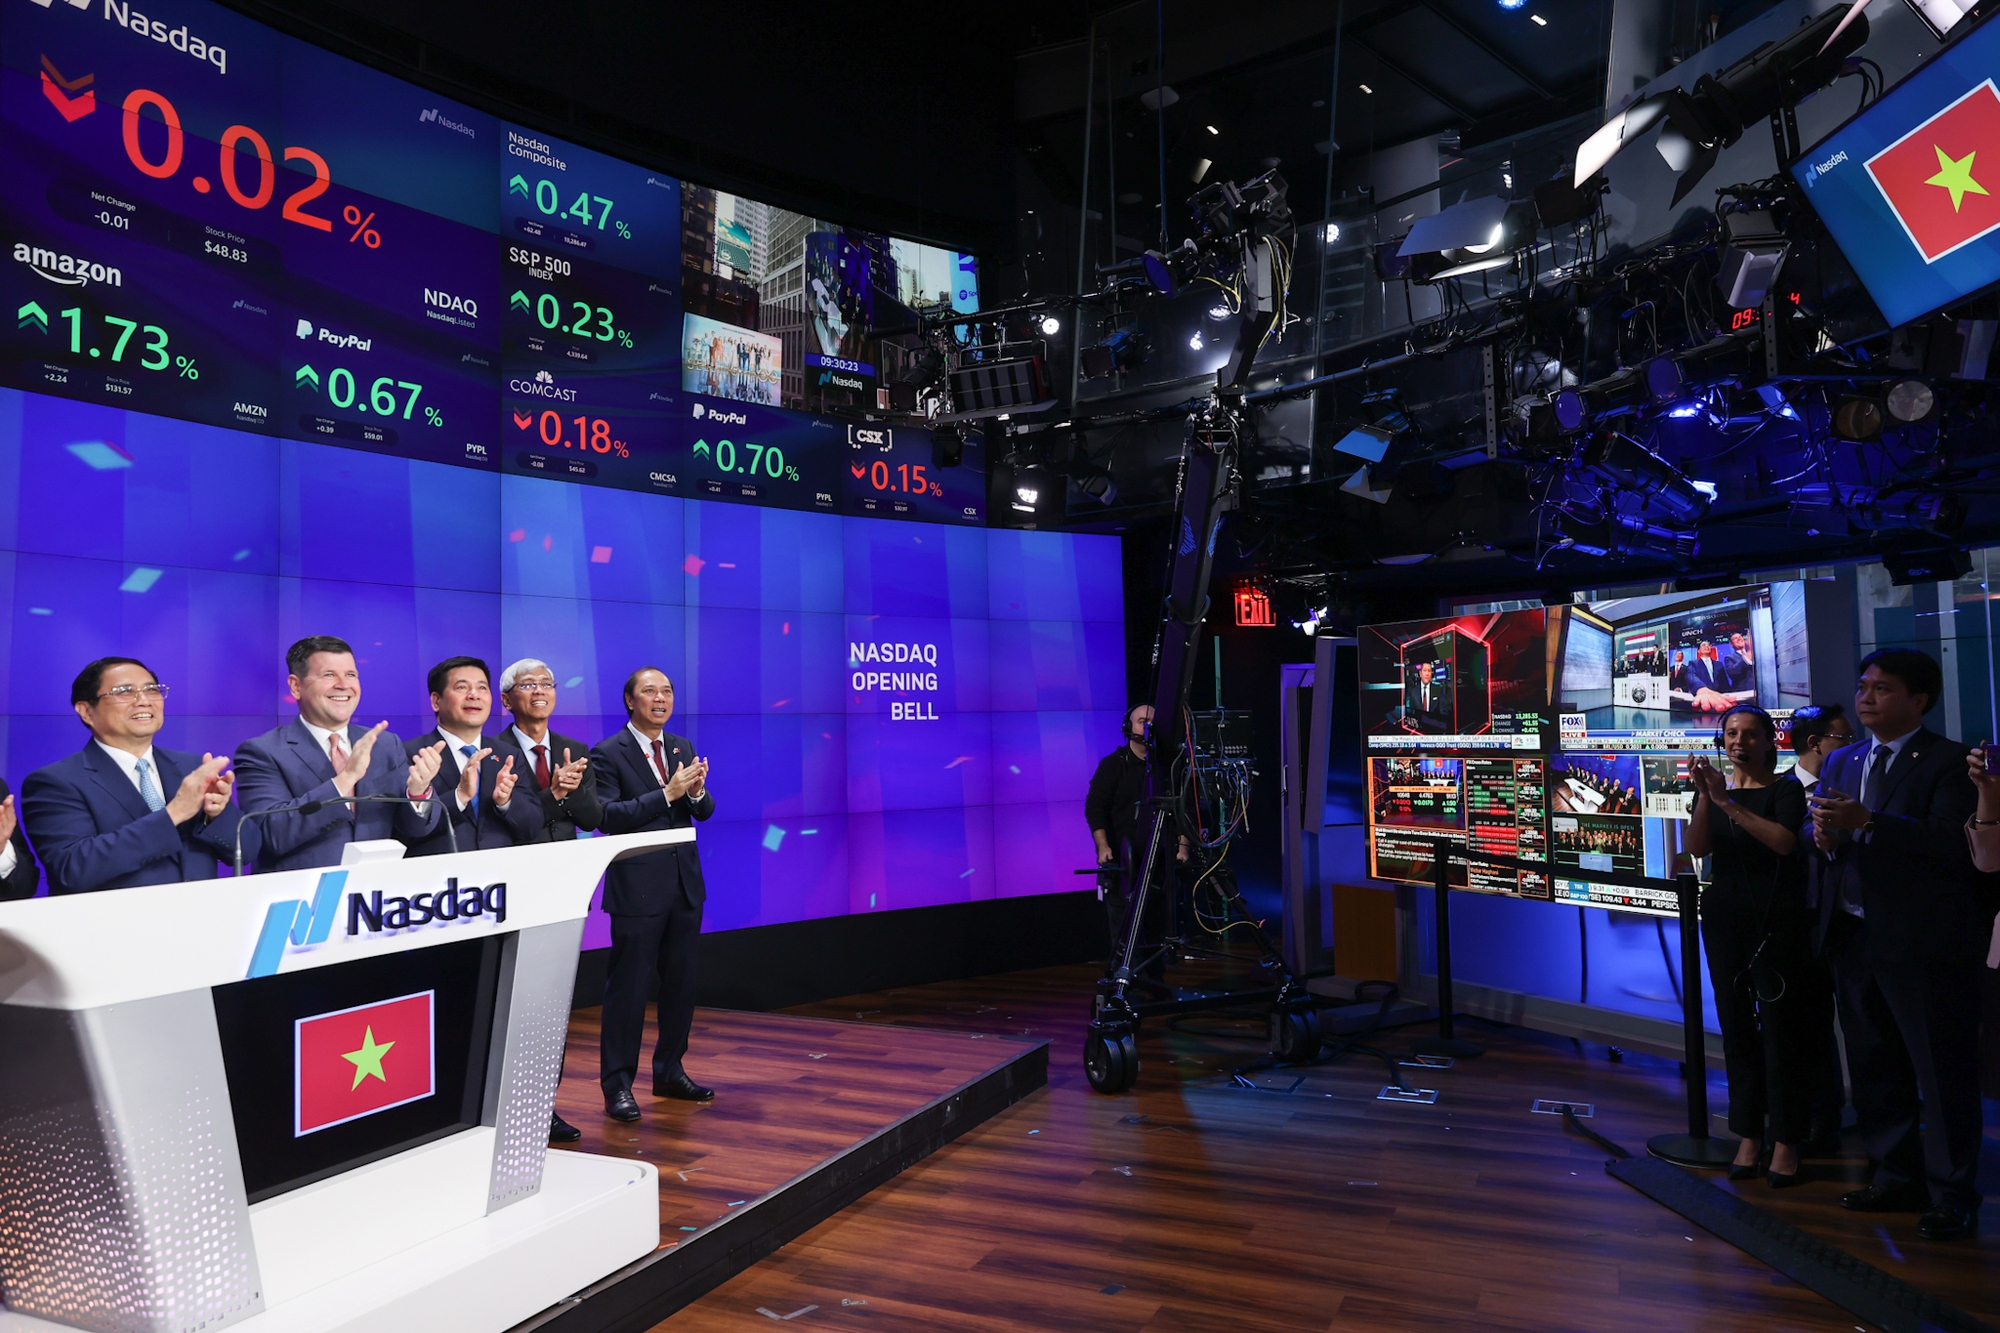 Thủ tướng rung chuông tại Sàn chứng khoán NASDAQ, kêu gọi các nhà đầu tư Hoa Kỳ - Ảnh 11.